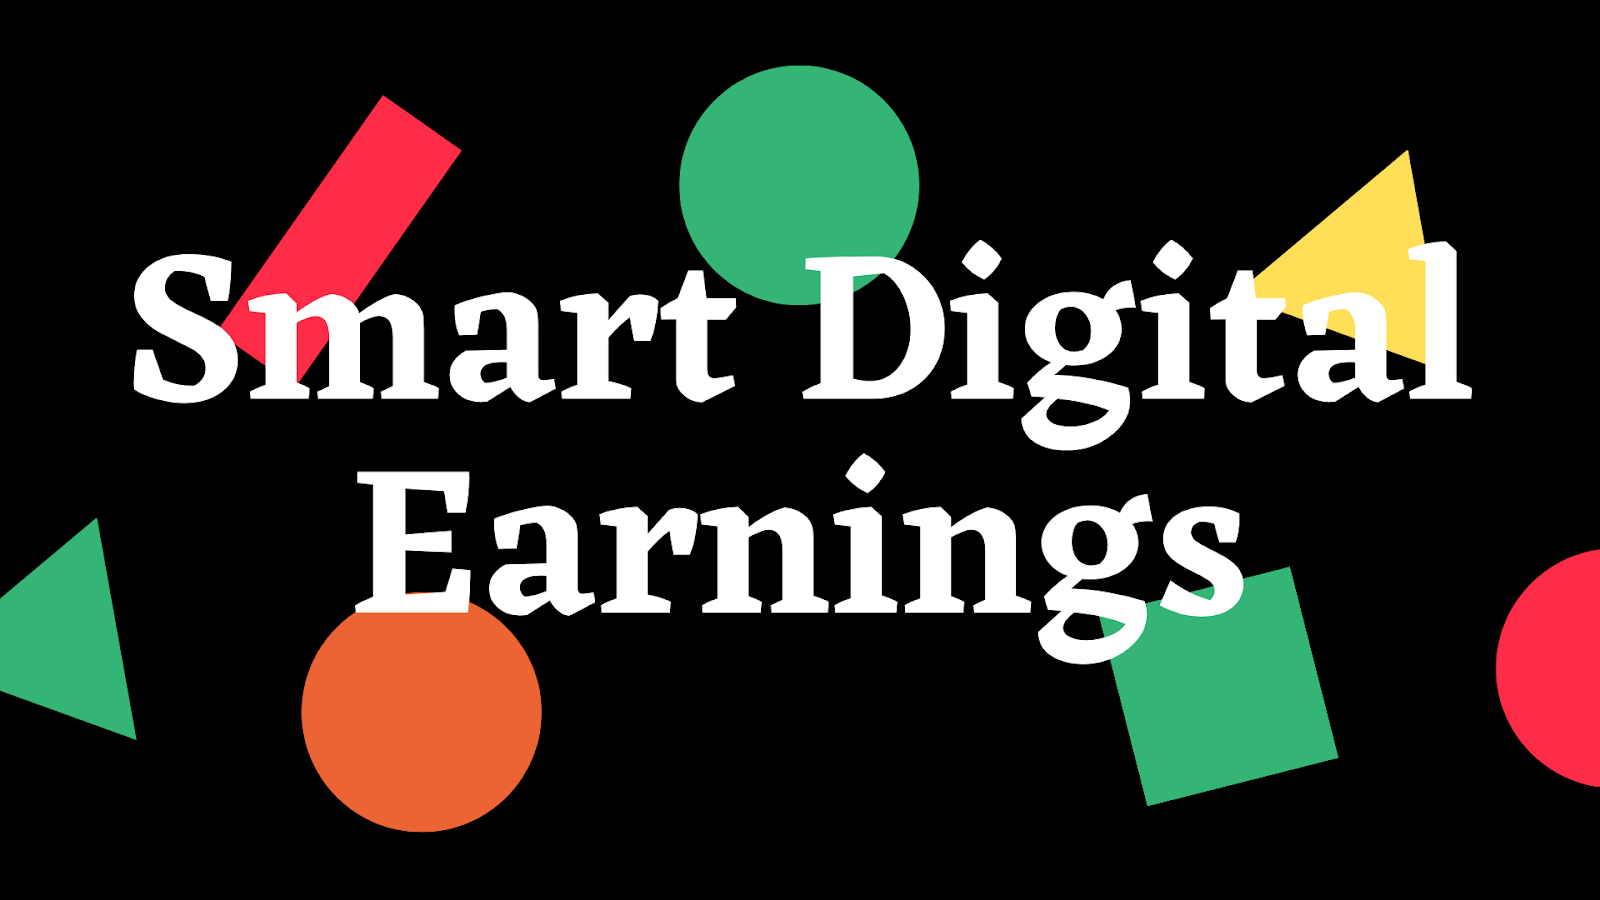 Smart Digital Earnings